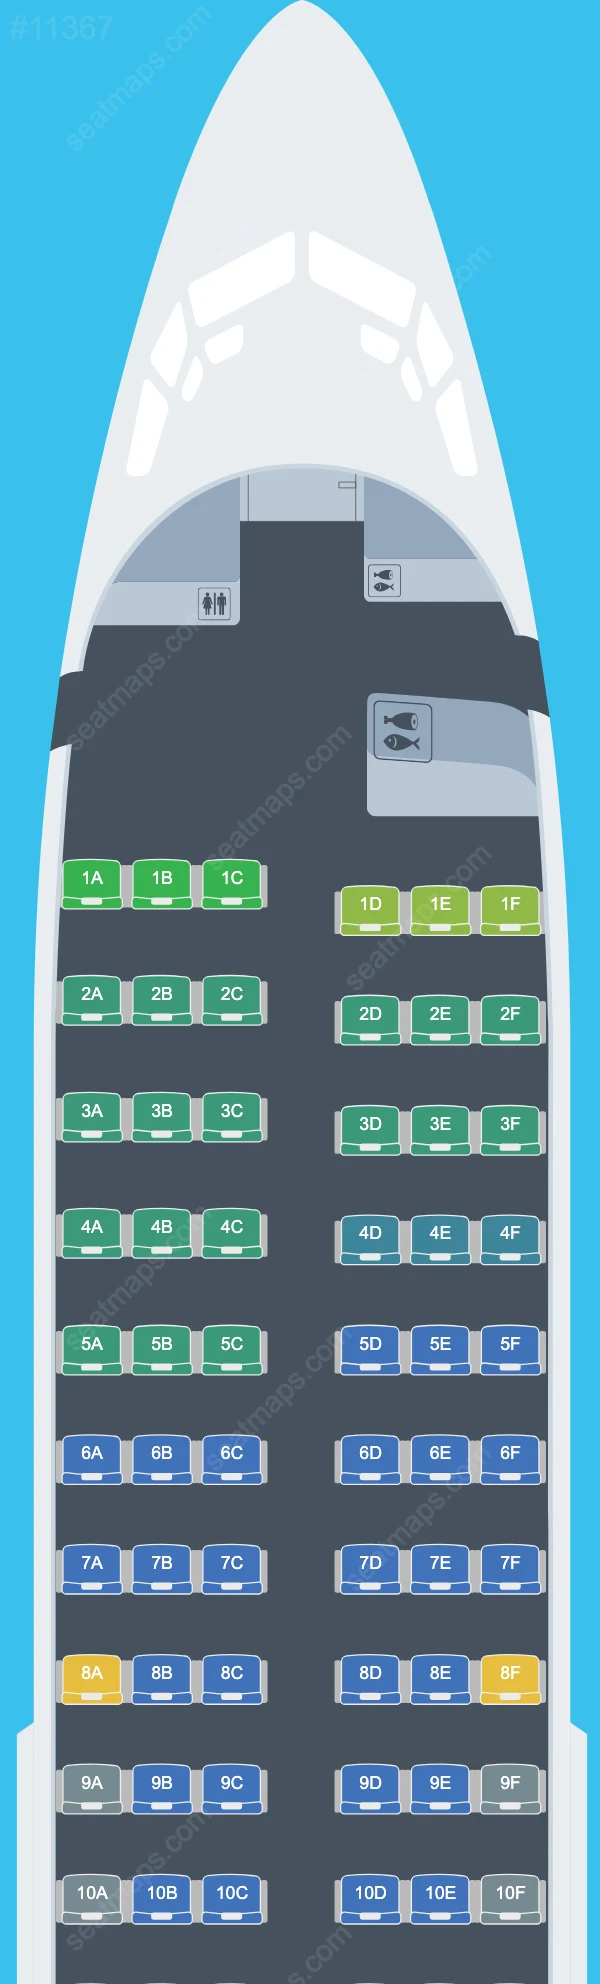 Схема салона Avelo Airlines в самолете Boeing 737 737-700 V.1